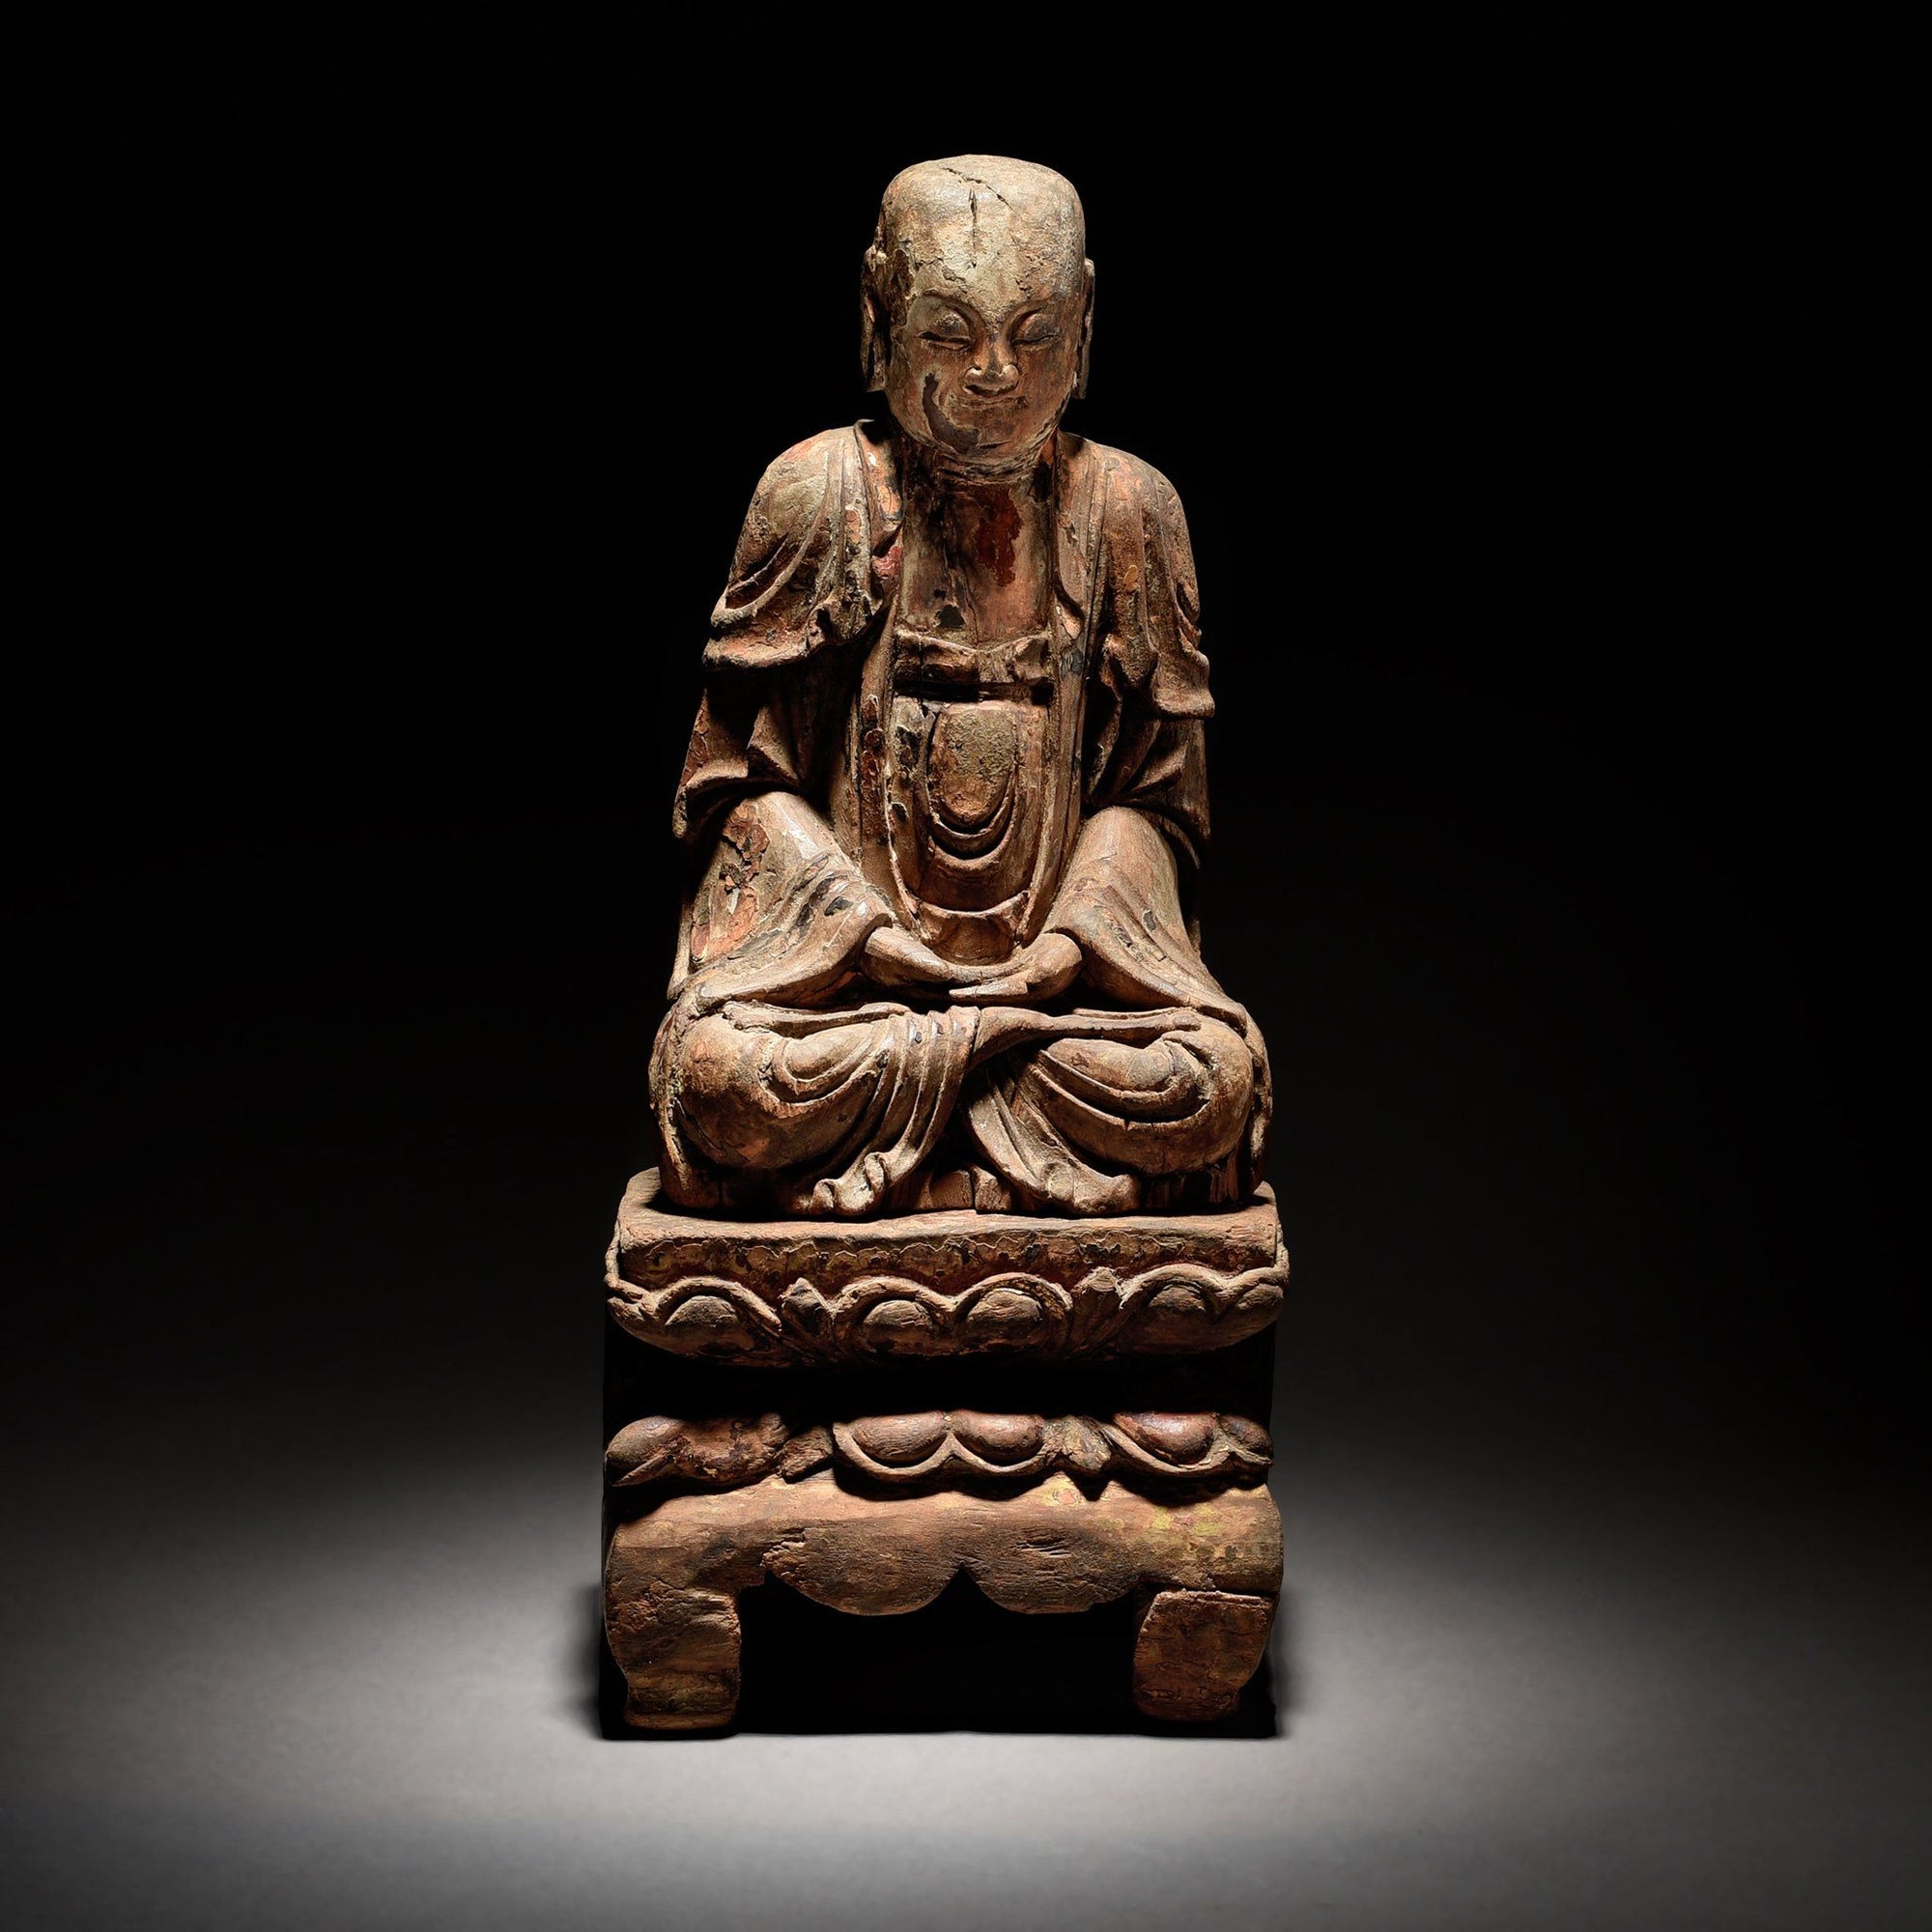 Chinese Polychrome Wood Figure of Buddha - 17thC | Indigo Antiques